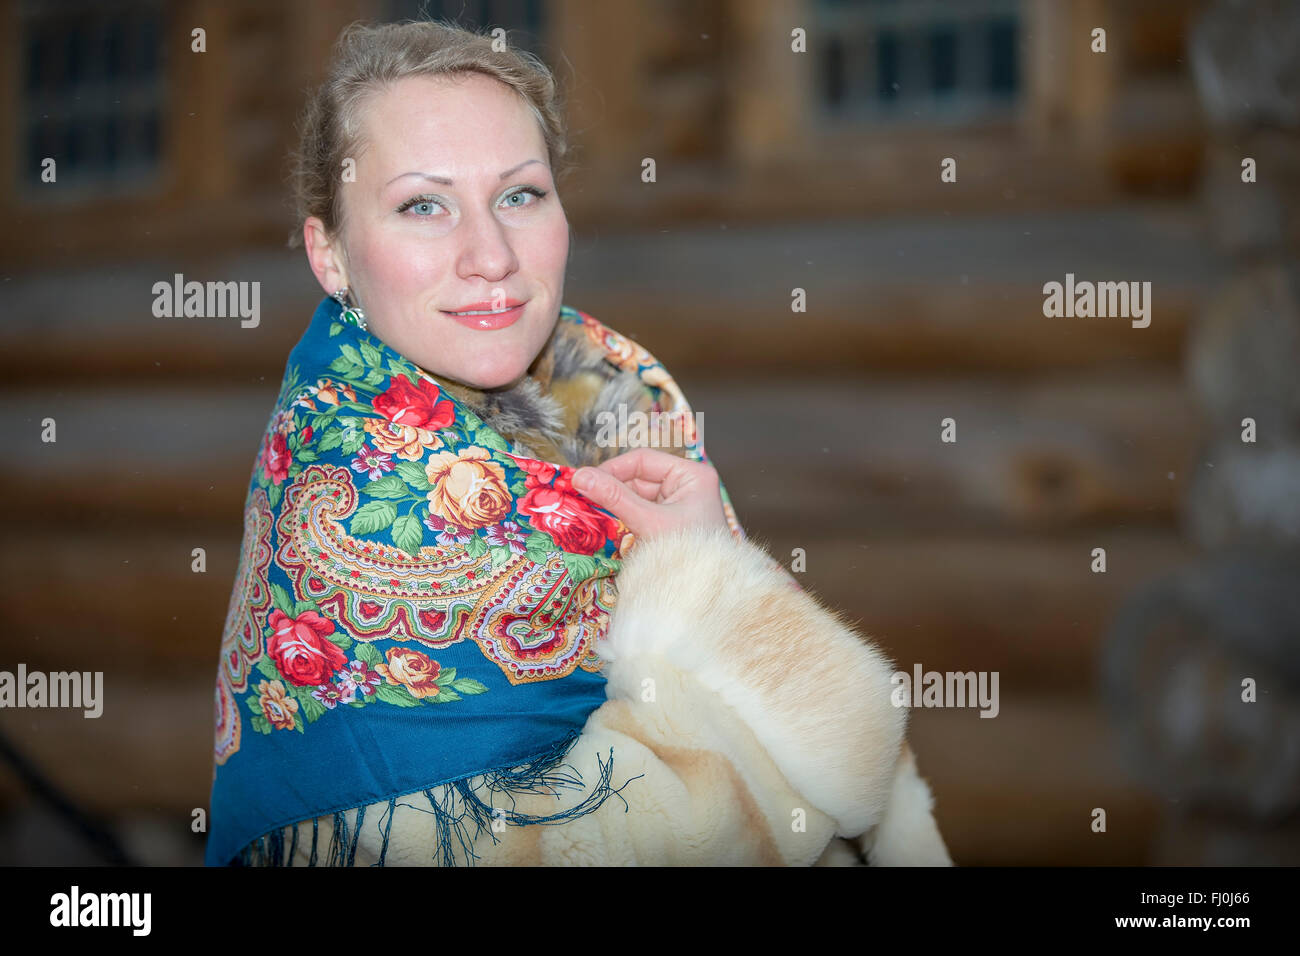 Junge Russin in eine traditionelle russische Kopftuch, Moskau, Russland  Stockfotografie - Alamy